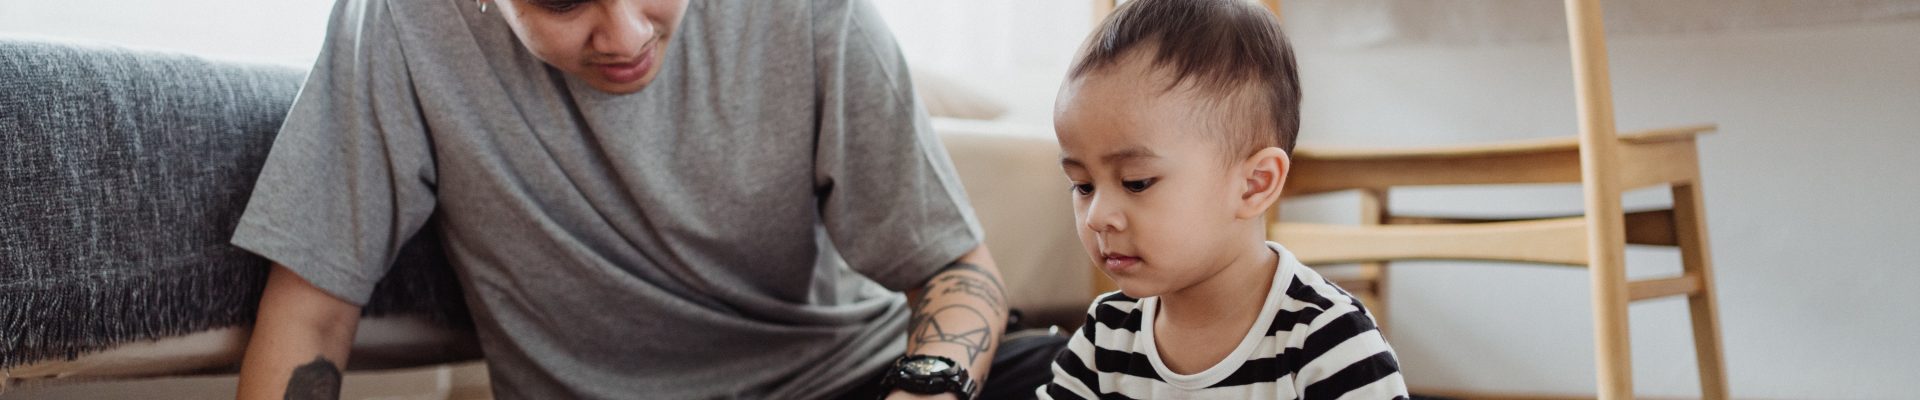 Giv dit barn et smartwatch i stedet for en mobiltelefon